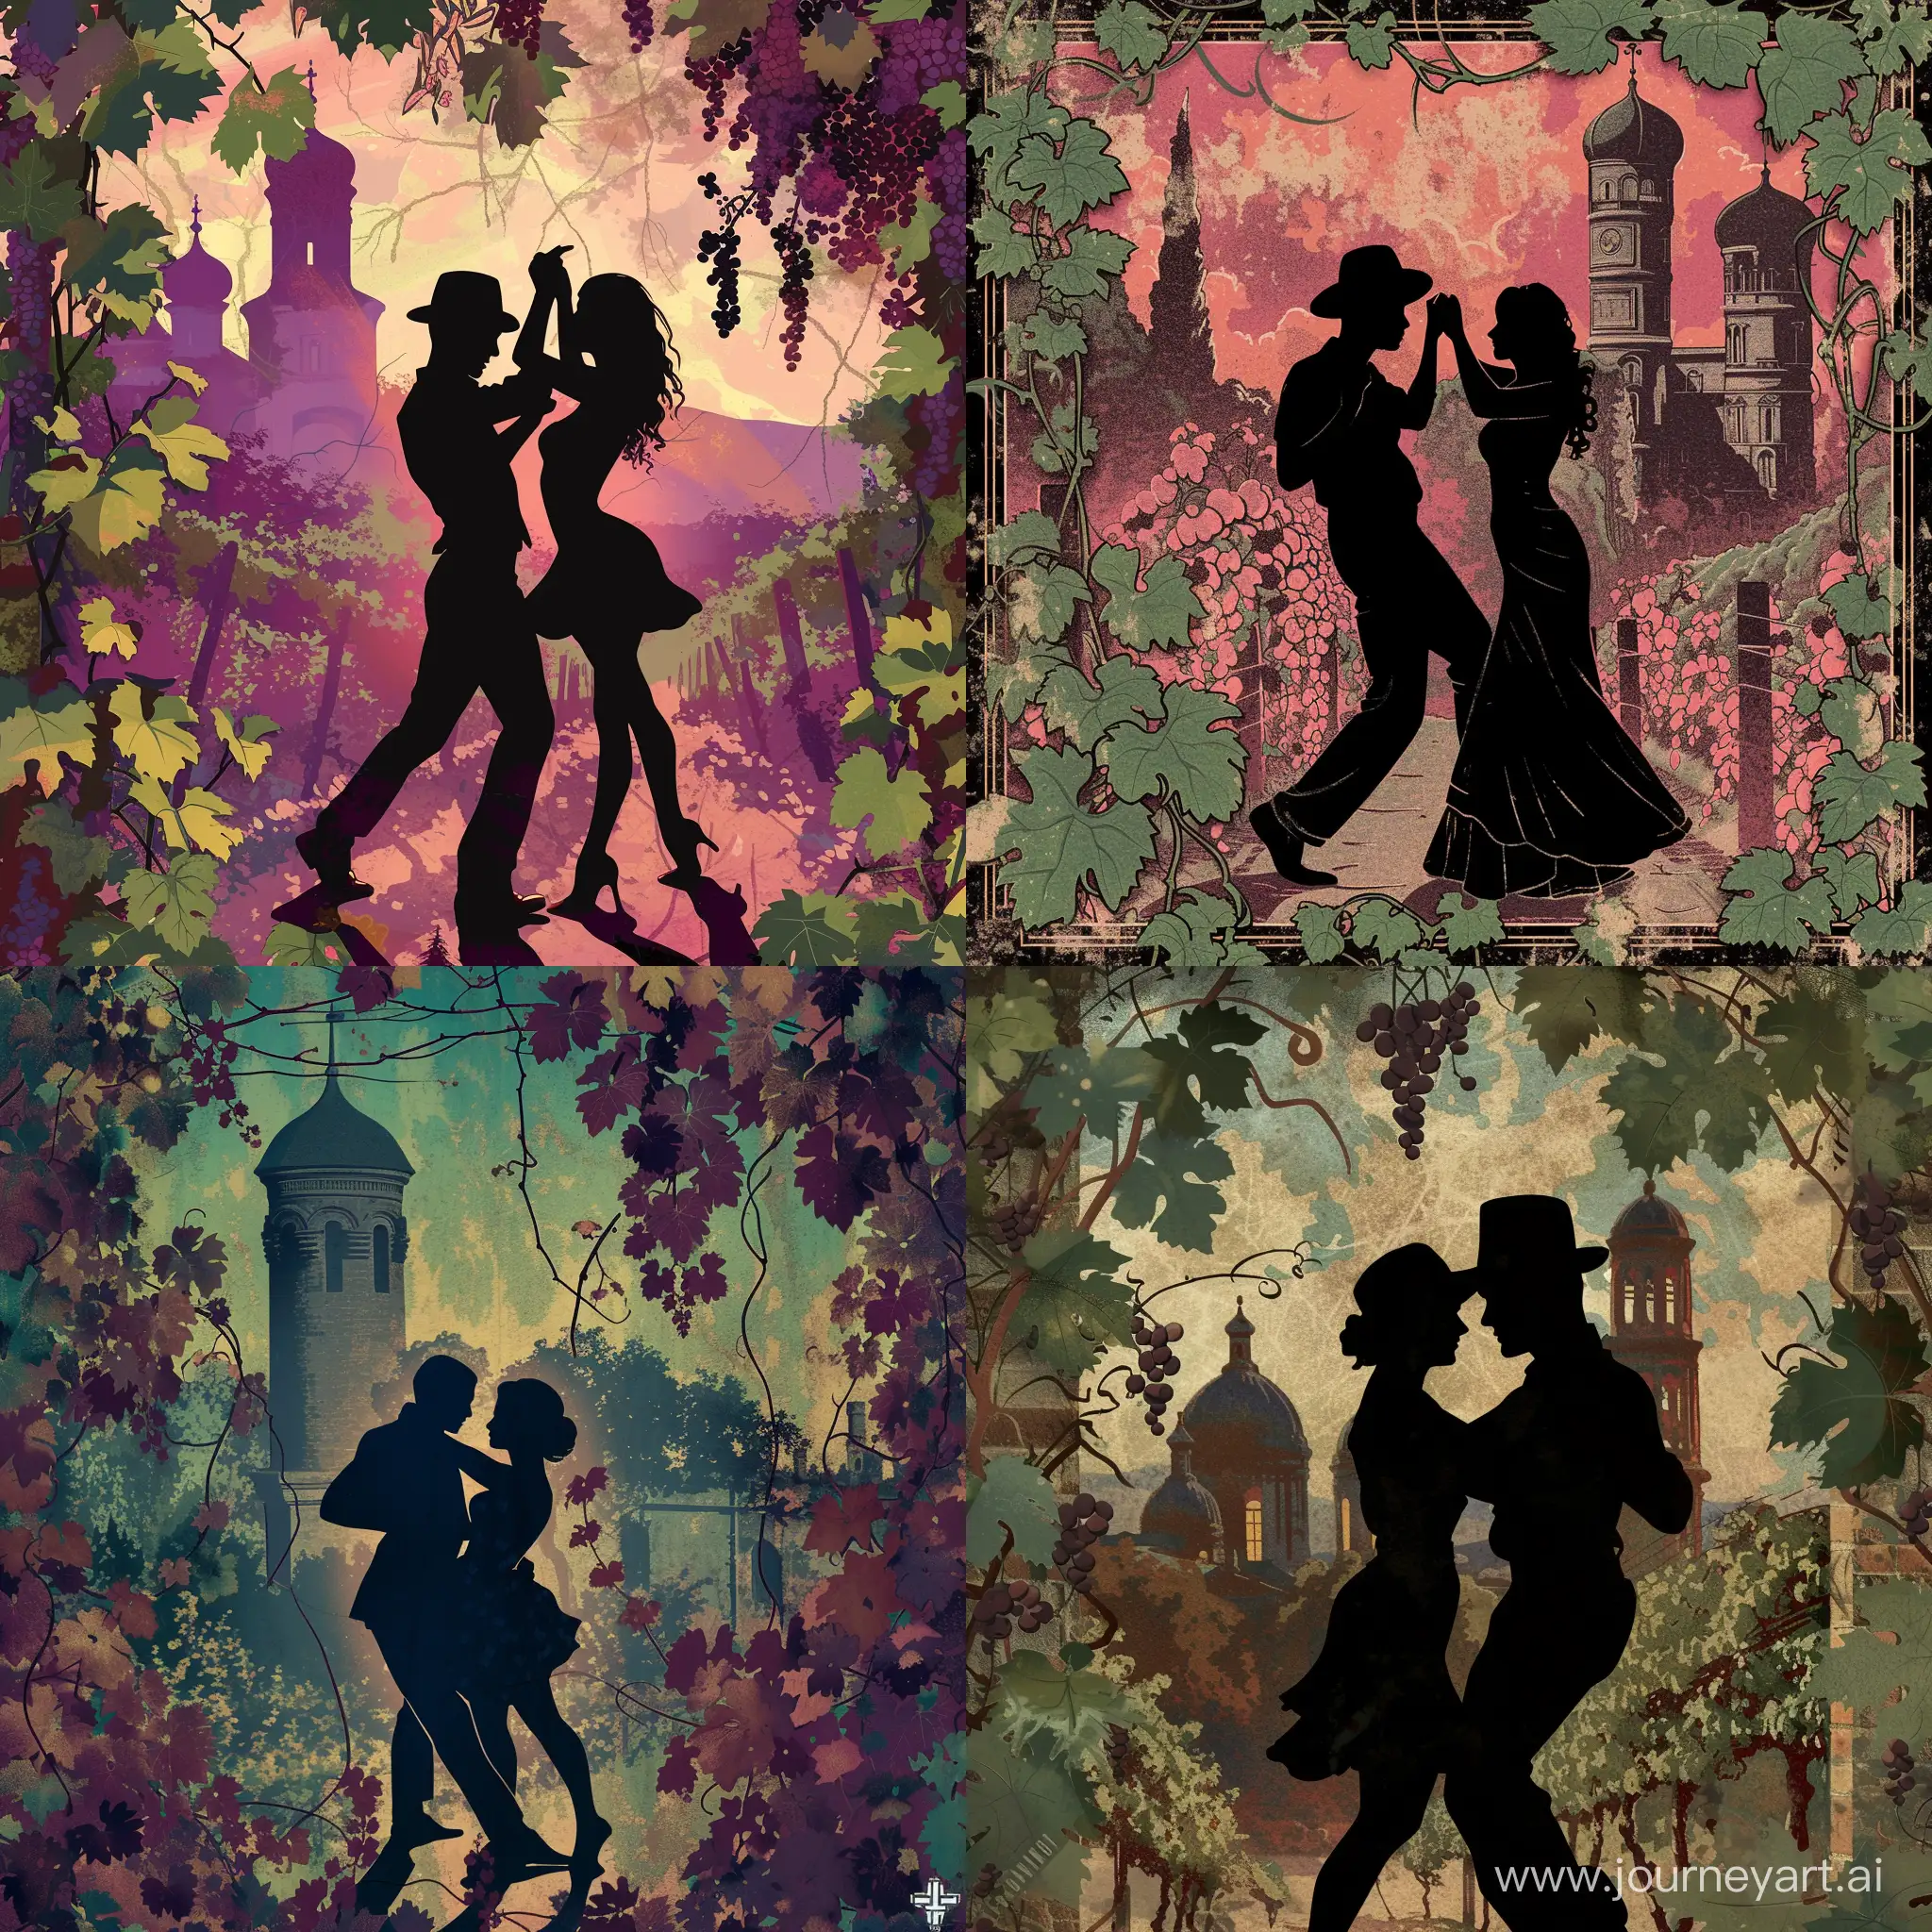 тень пары, танцующей латиноамериканские танцы, на фоне виноградная лоза на фоне грузинских старинных башен в стиле обложки альбомов Tyler The Creator